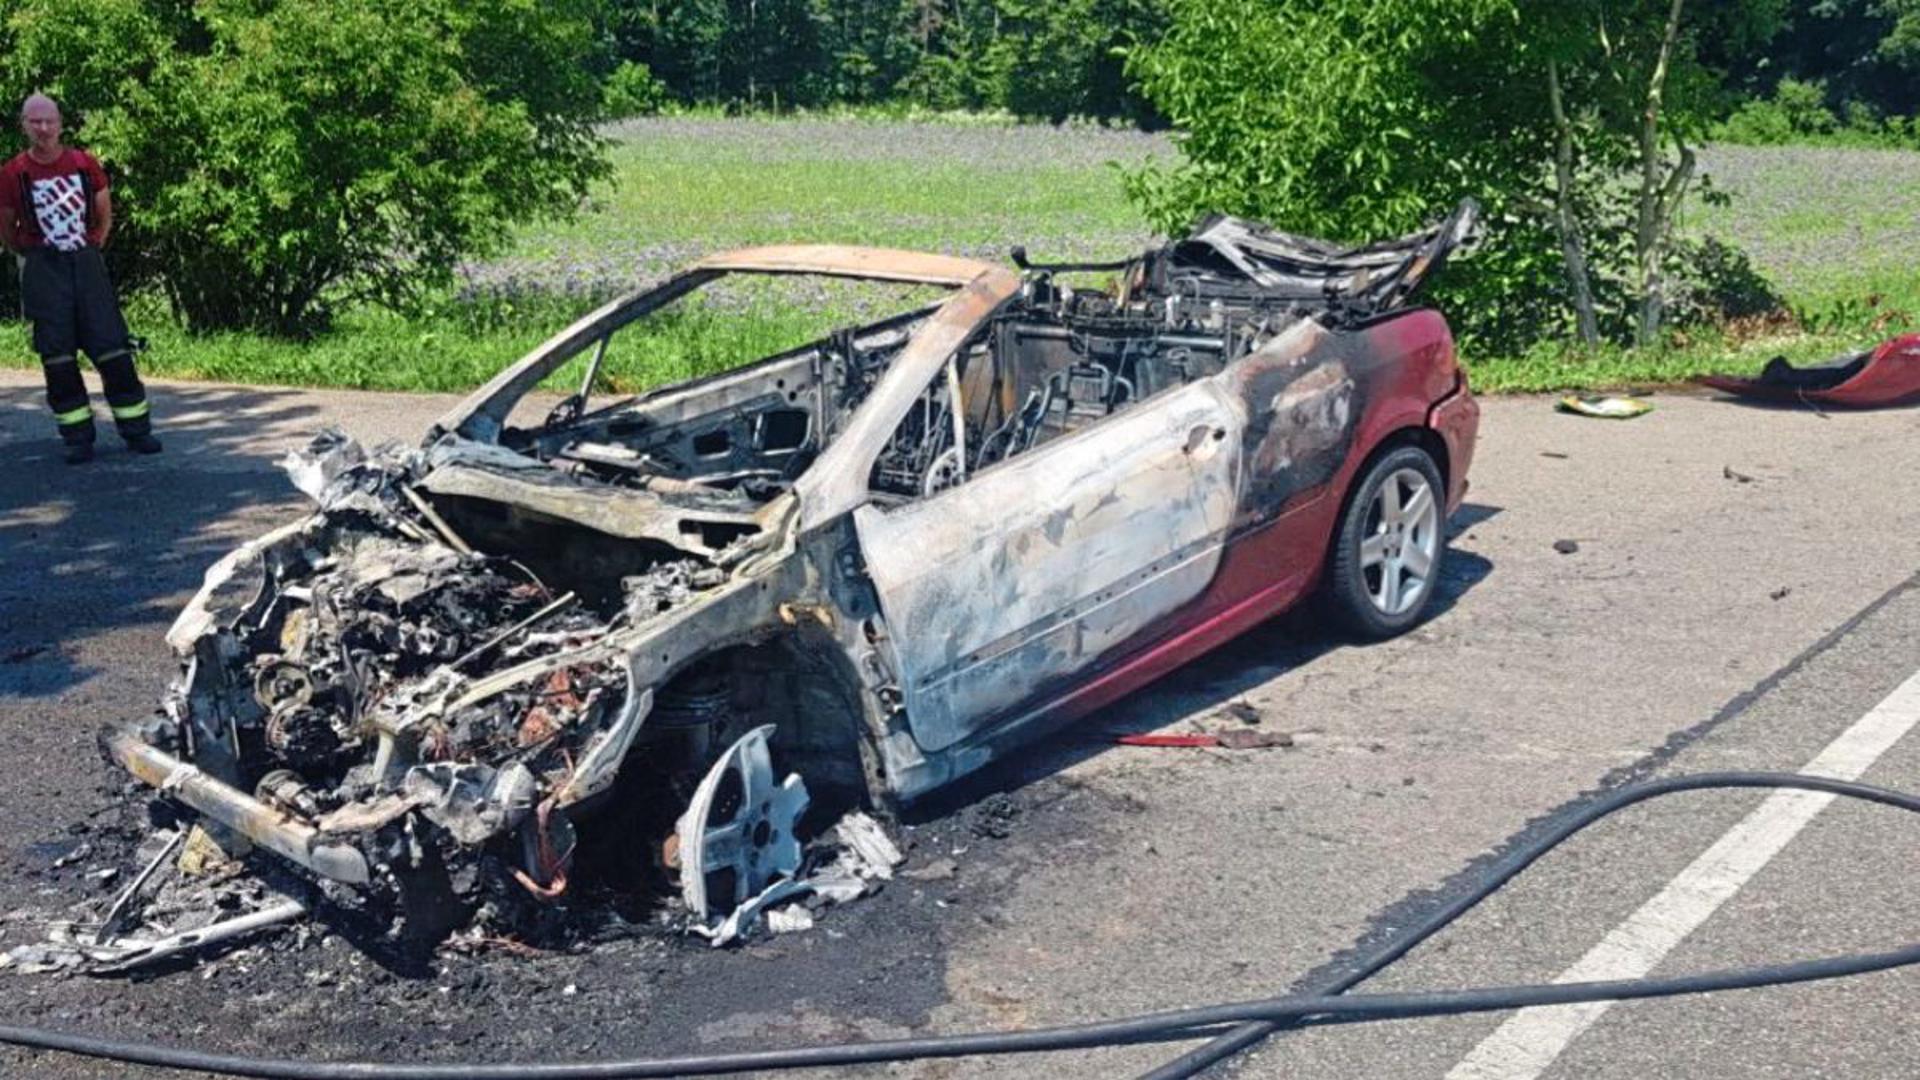 Der Fahrer konnte sich rechtzeitig aus dem Fahrzeug retten. Das Cabrio brannte allerdings vollständig aus.